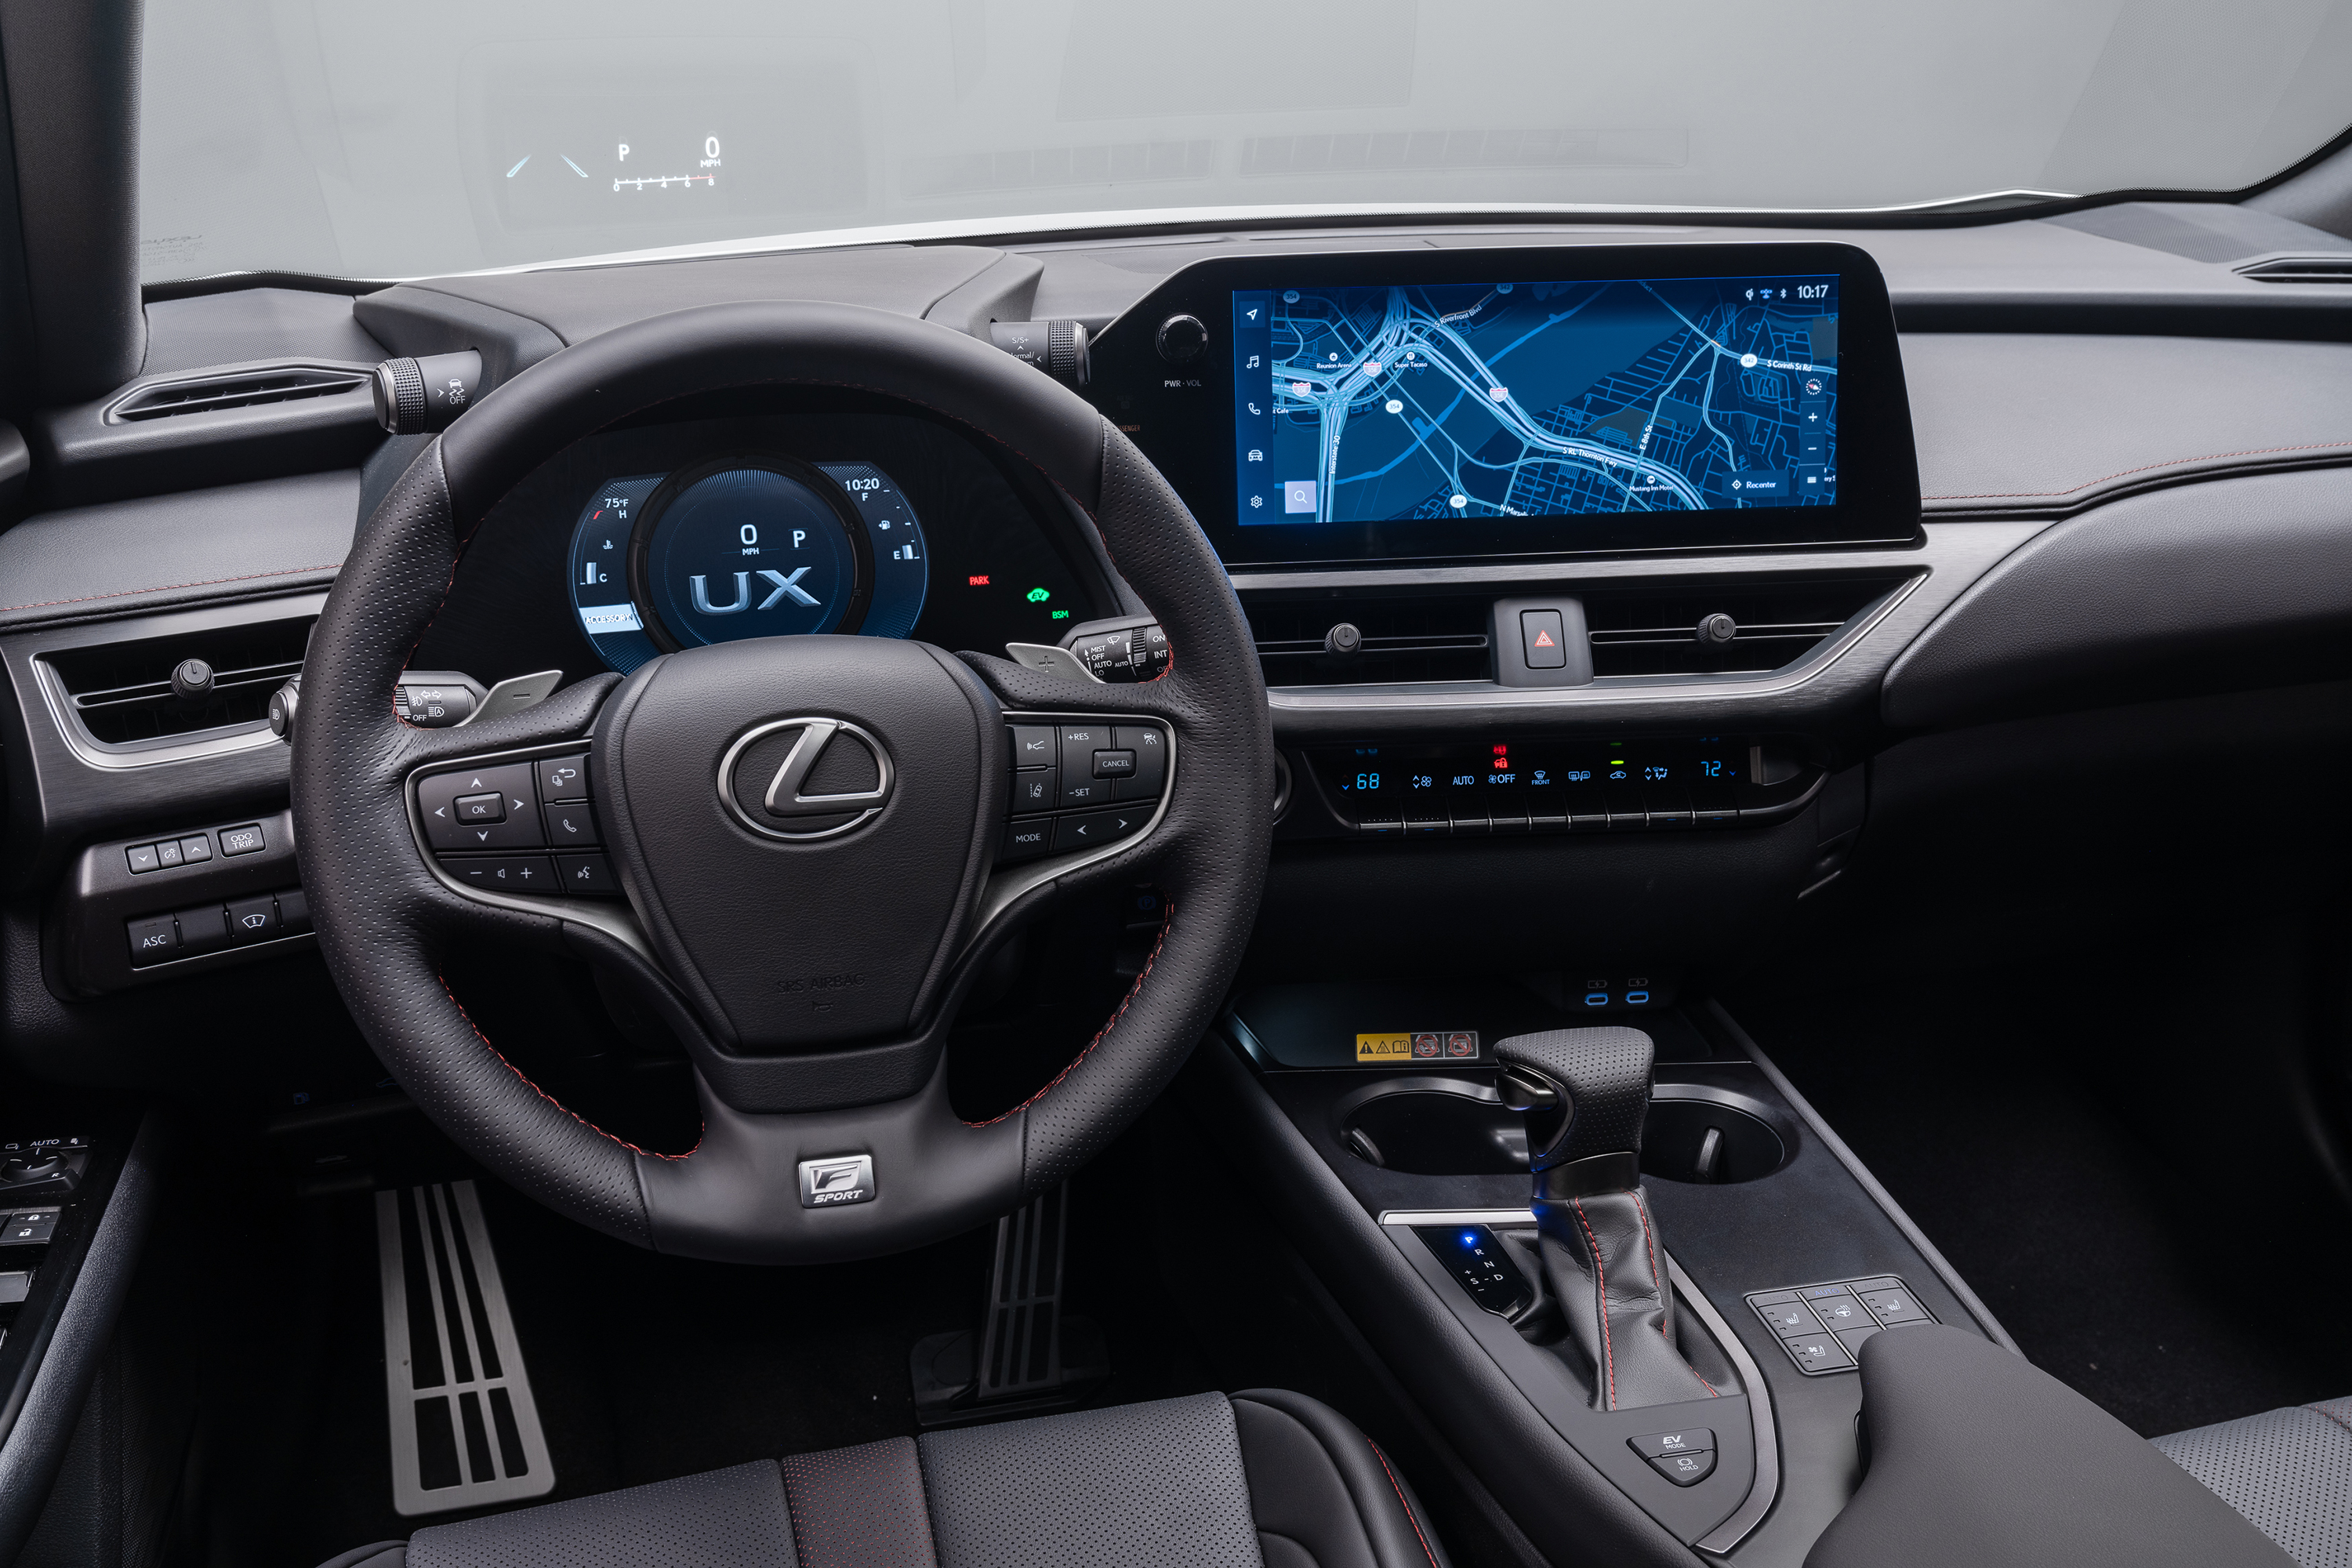 Auto review: Efficient Lexus UX 250h dresses up